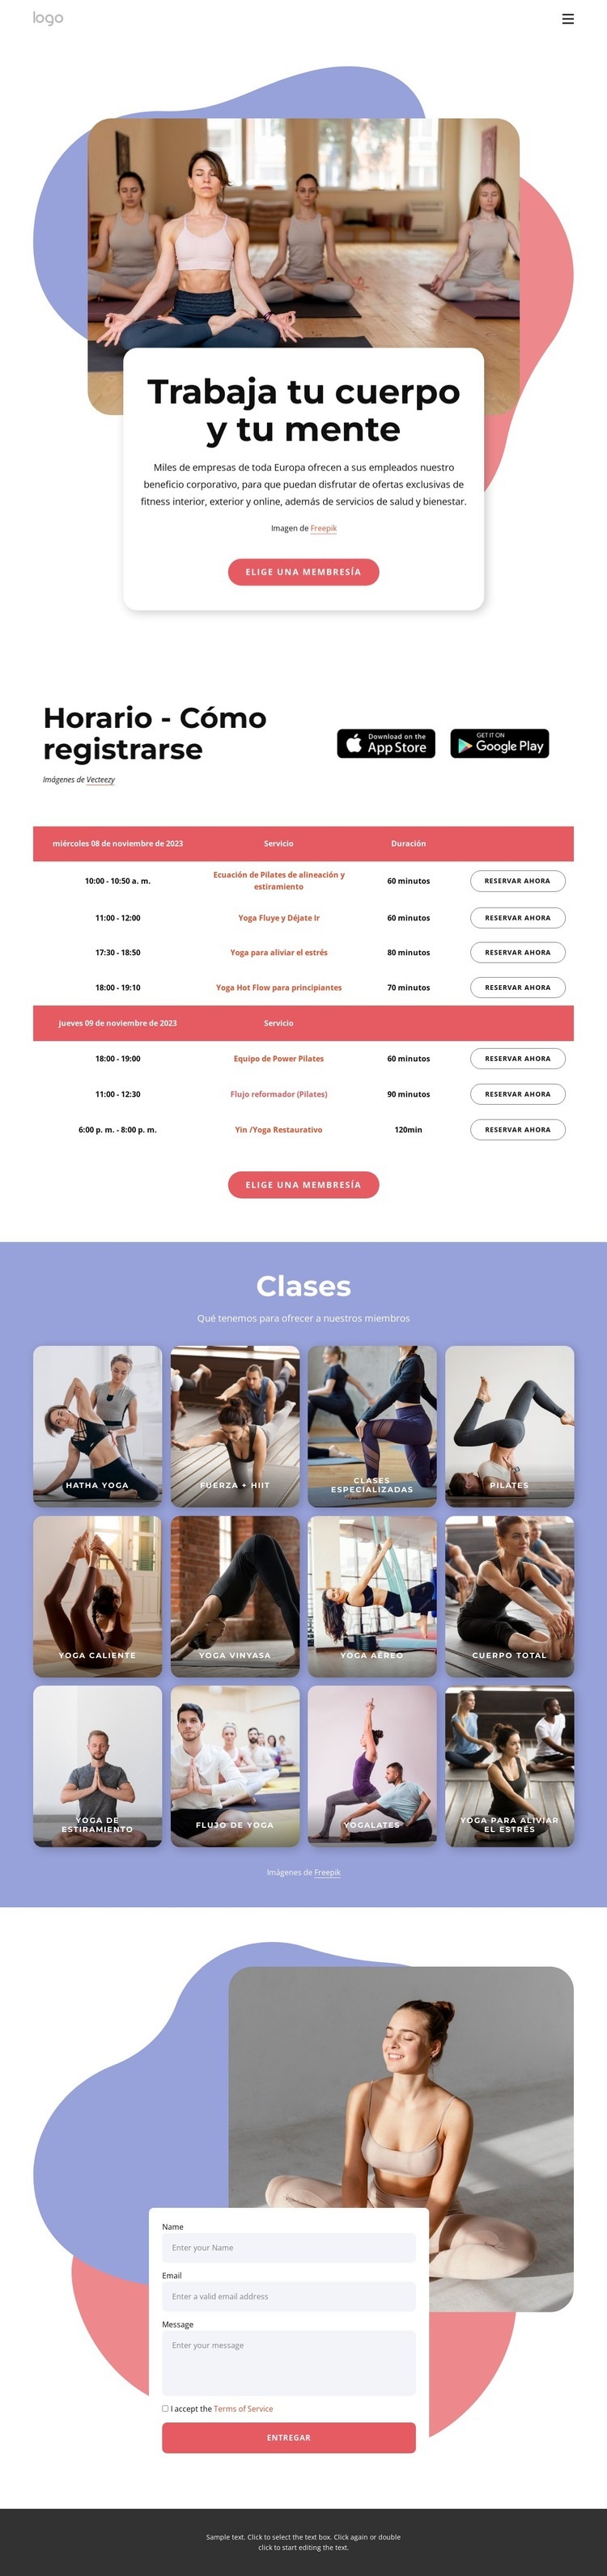 Disfruta del pilates y el yoga Diseño de páginas web